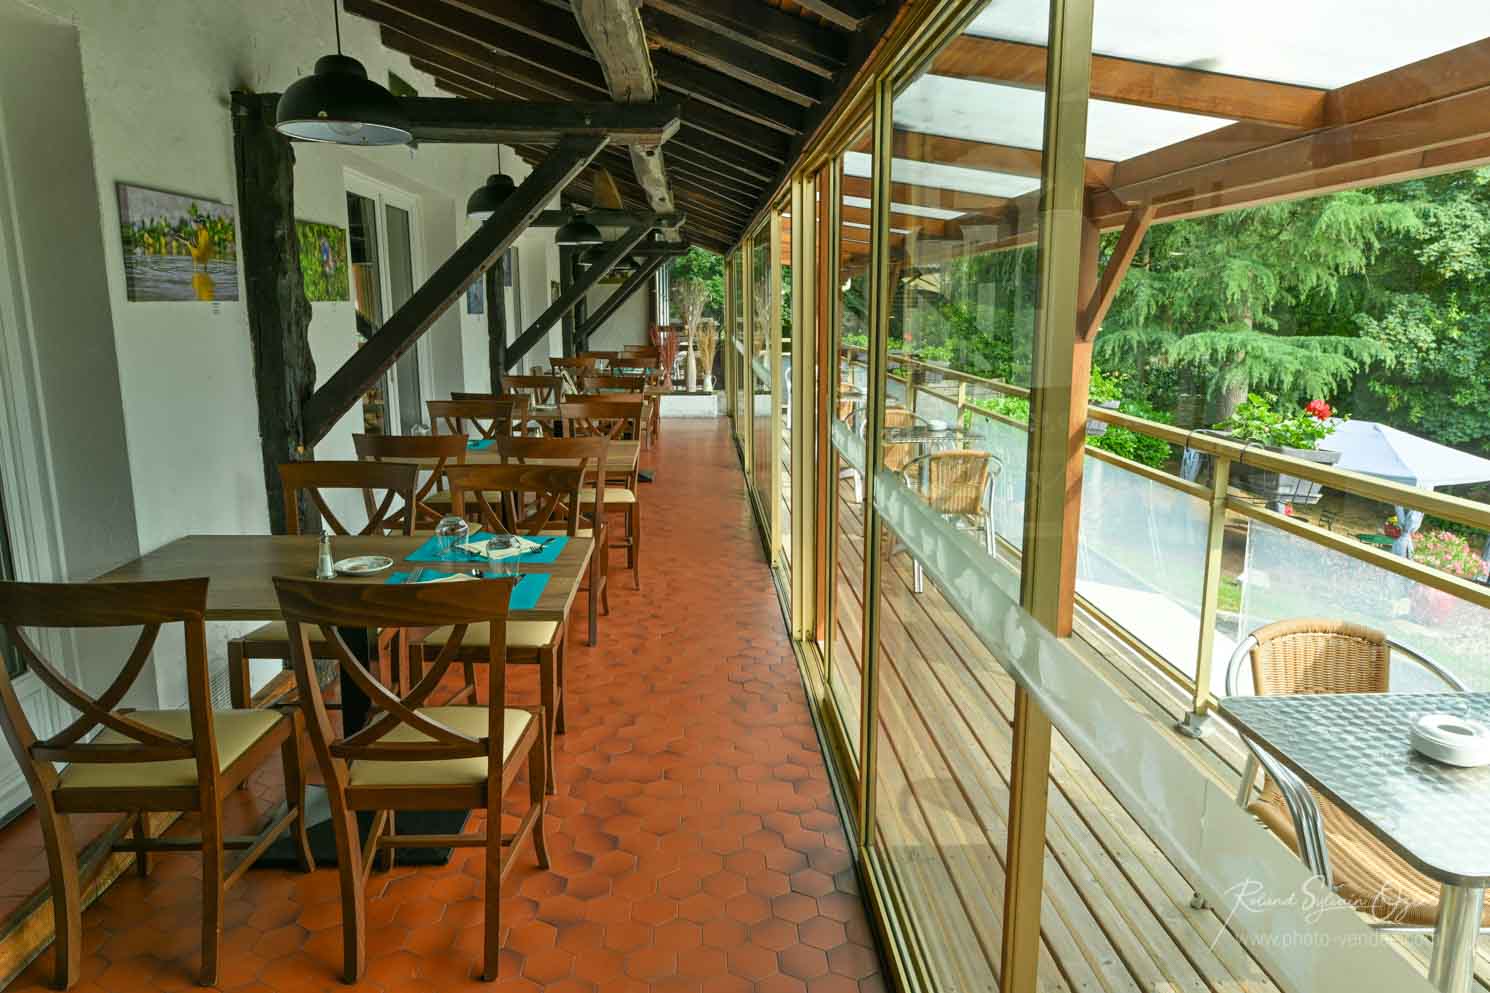 Restaurant en terrasse avec vue sur parc près du Puy du Fou